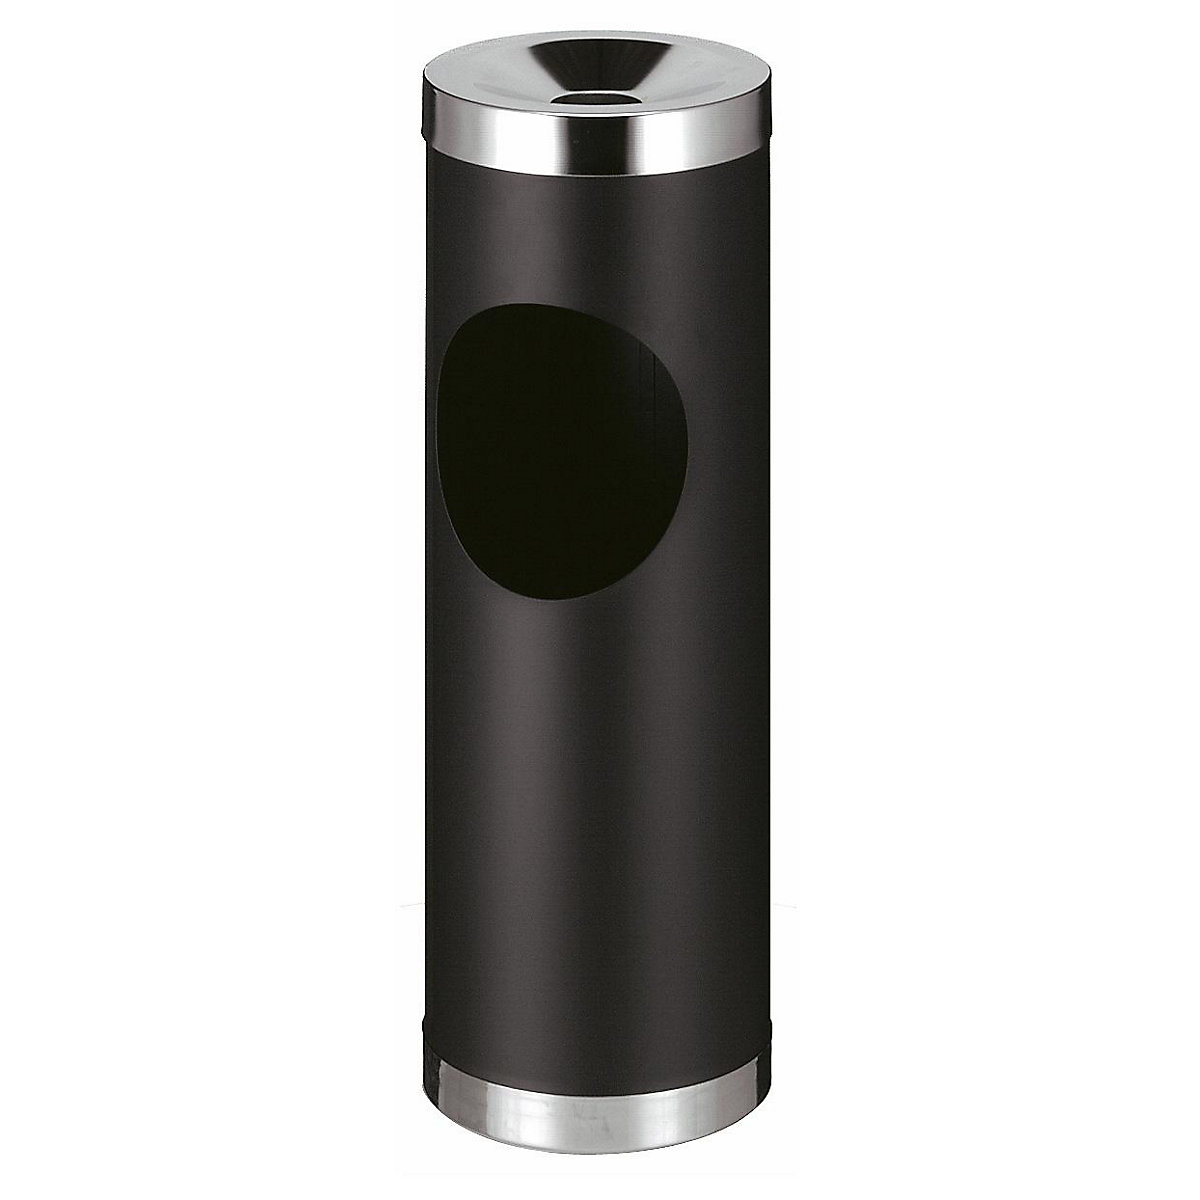 Kombiniran pepelnik brez notranje posode, prostornina 50 l, VxØ 720 x 240 mm, črn-5